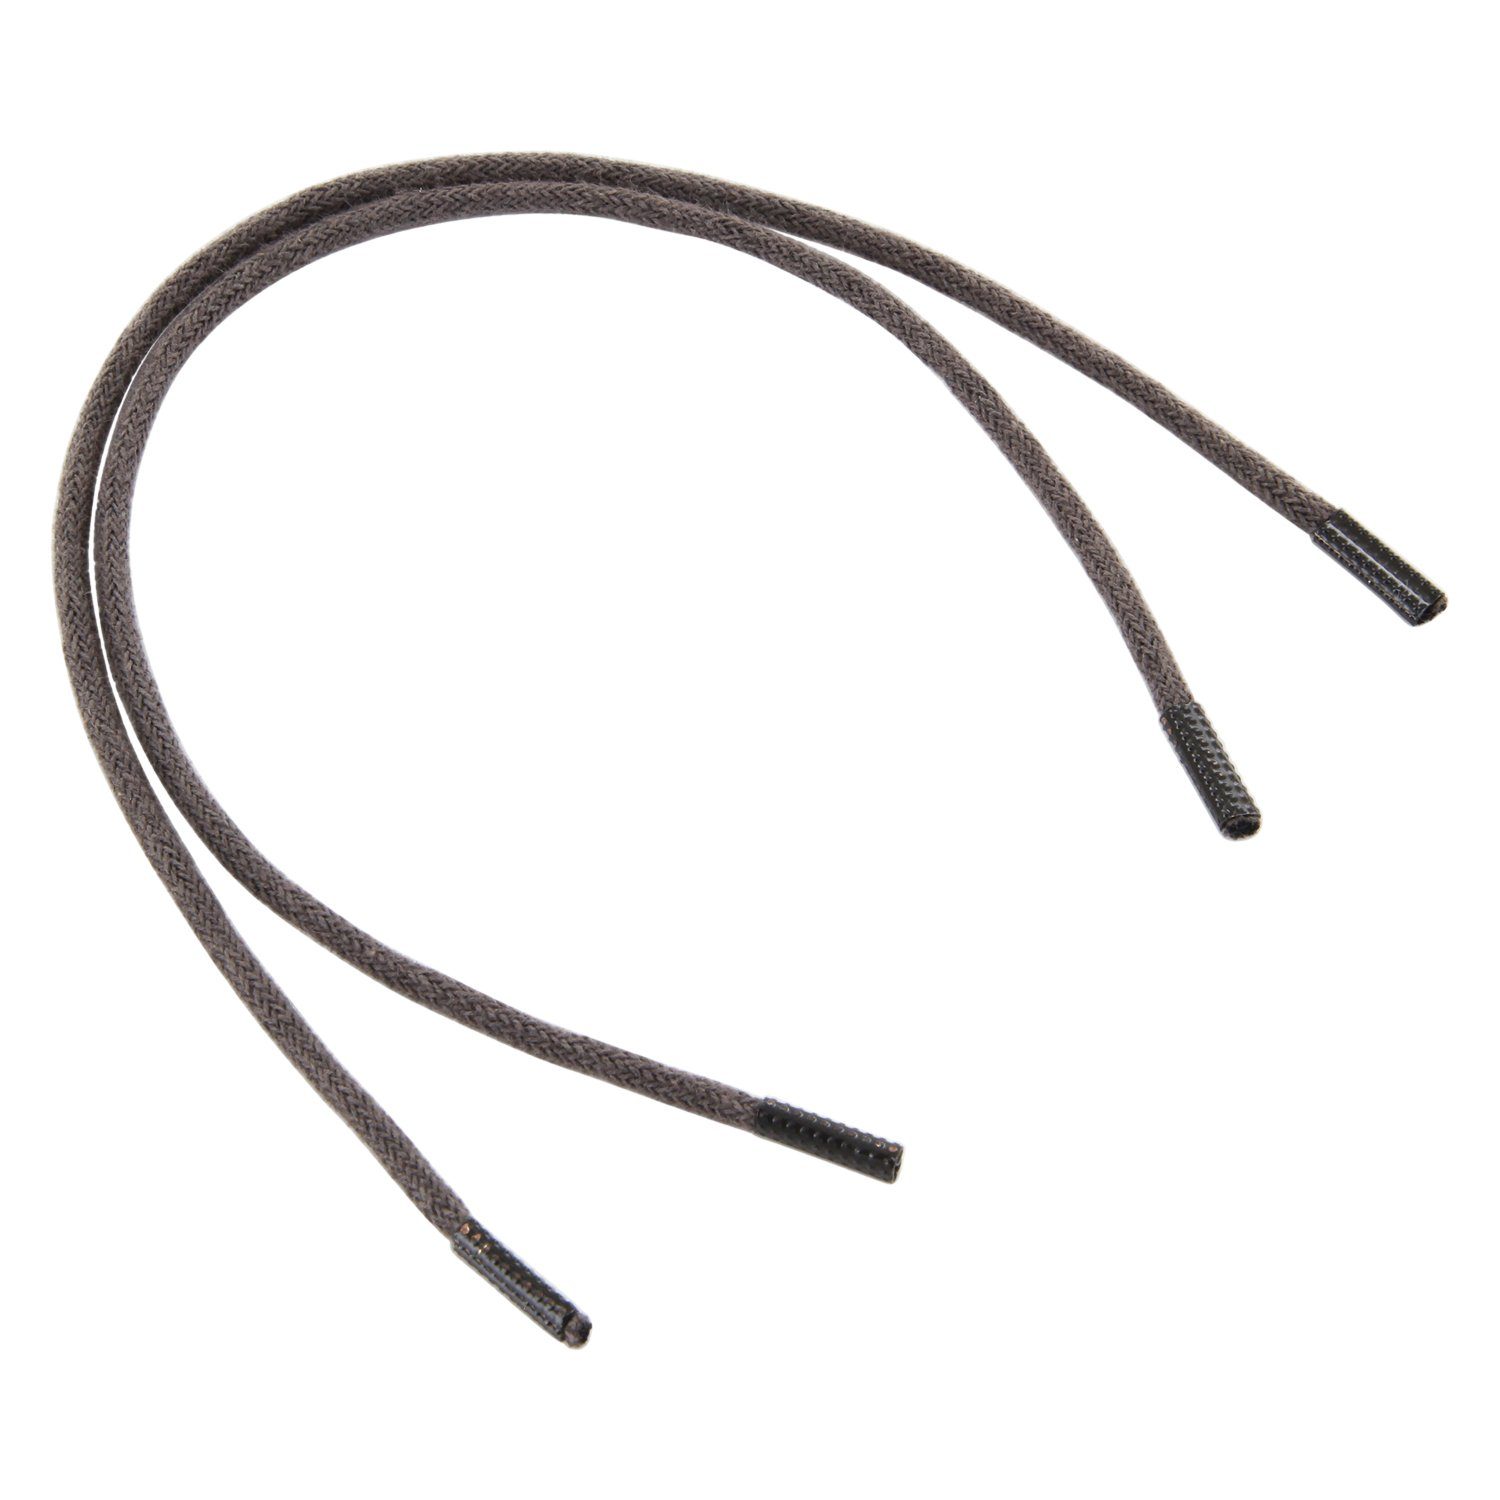 Rema Schnürsenkel Rema Schnürsenkel Dunkelgrau - rund - ca. 2,5 mm dünn für Sie nach Wunschlänge geschnitten und mit Metallenden versehen